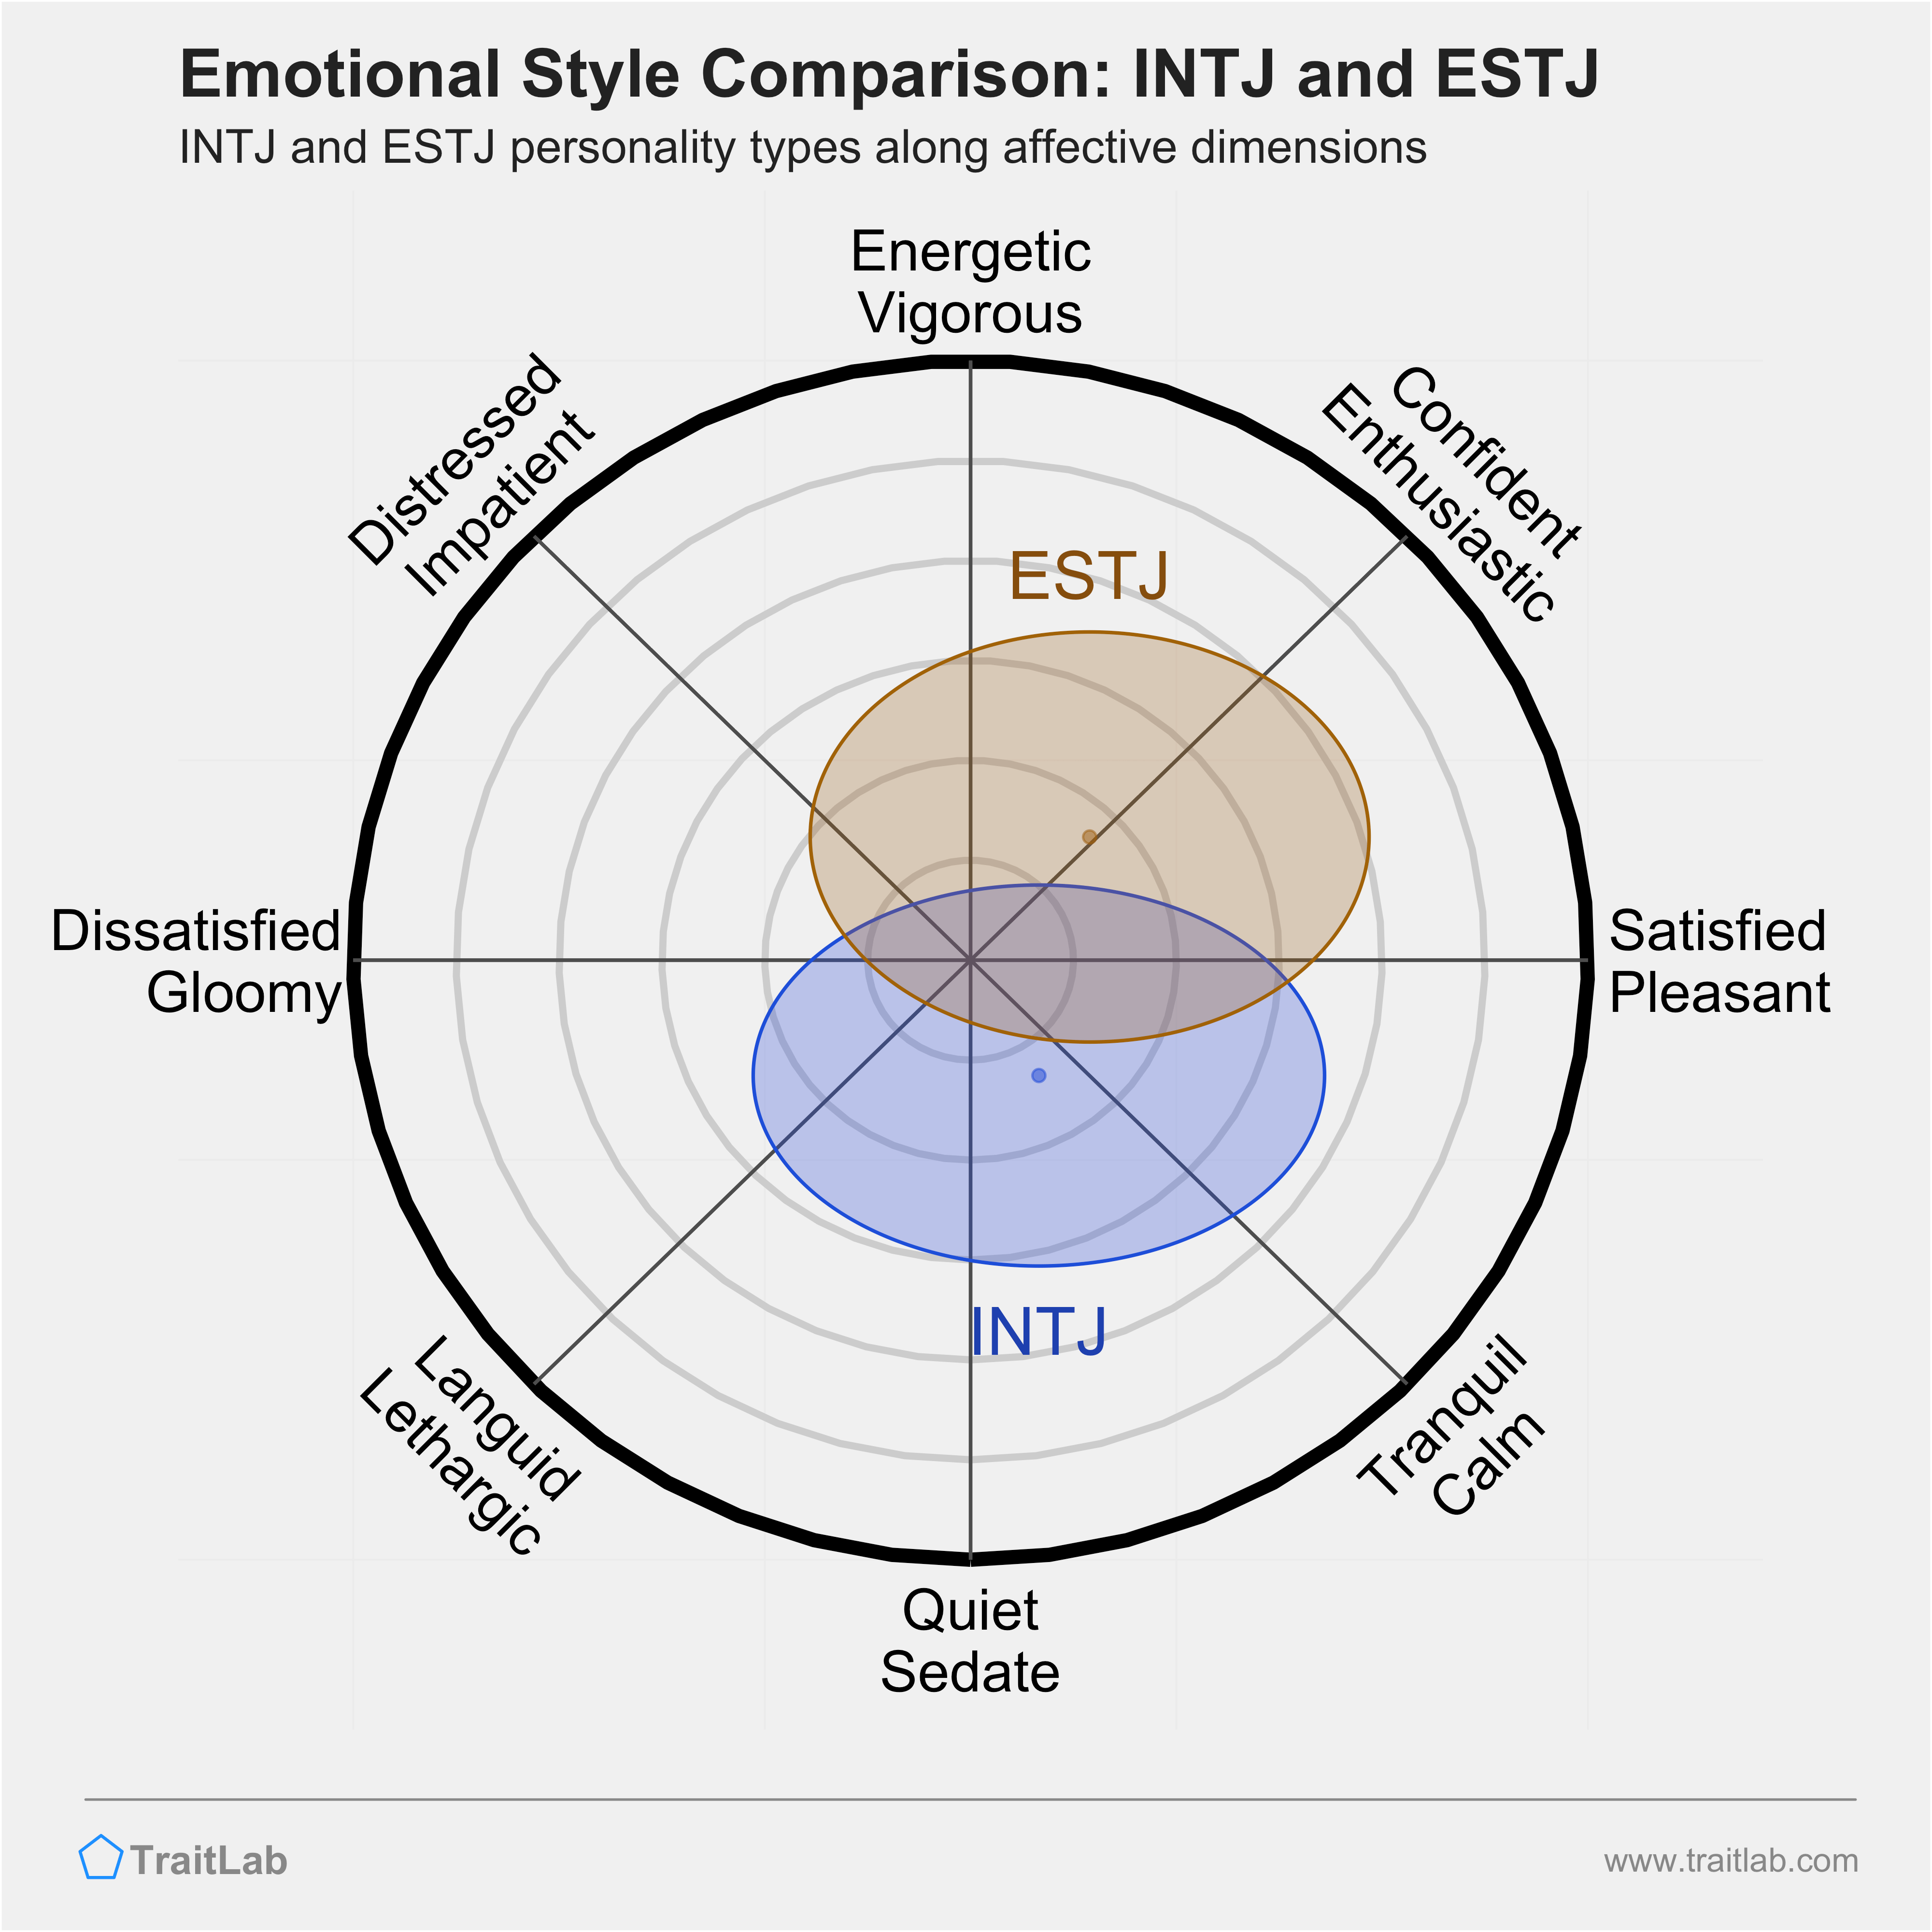 INTJ and ESTJ comparison across emotional (affective) dimensions